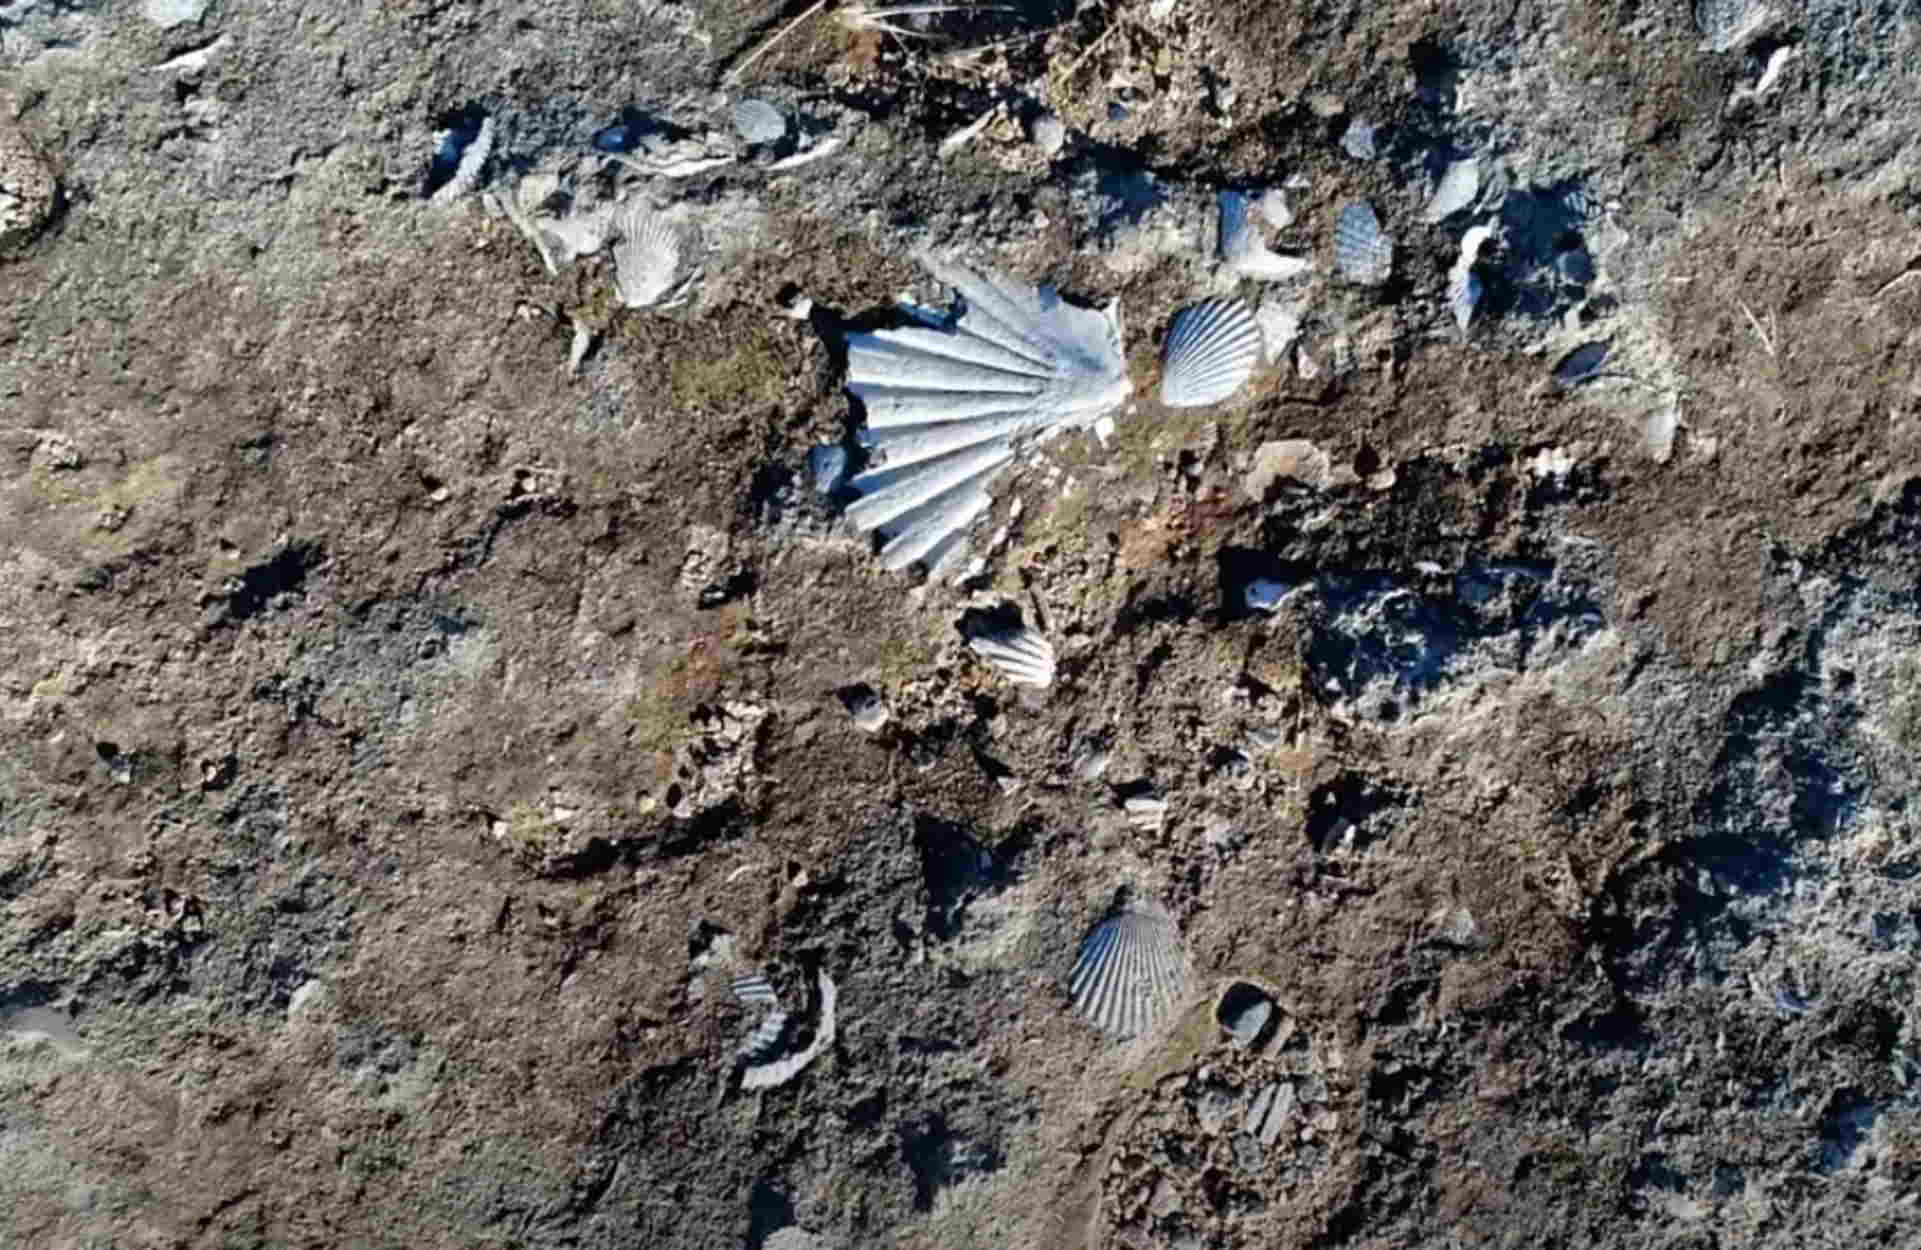 Σπάνια ανακάλυψη: Ο χωματόδρομος χωρίς όνομα με χιλιάδες απολιθωμένα κοχύλια εκατομμυρίων ετών